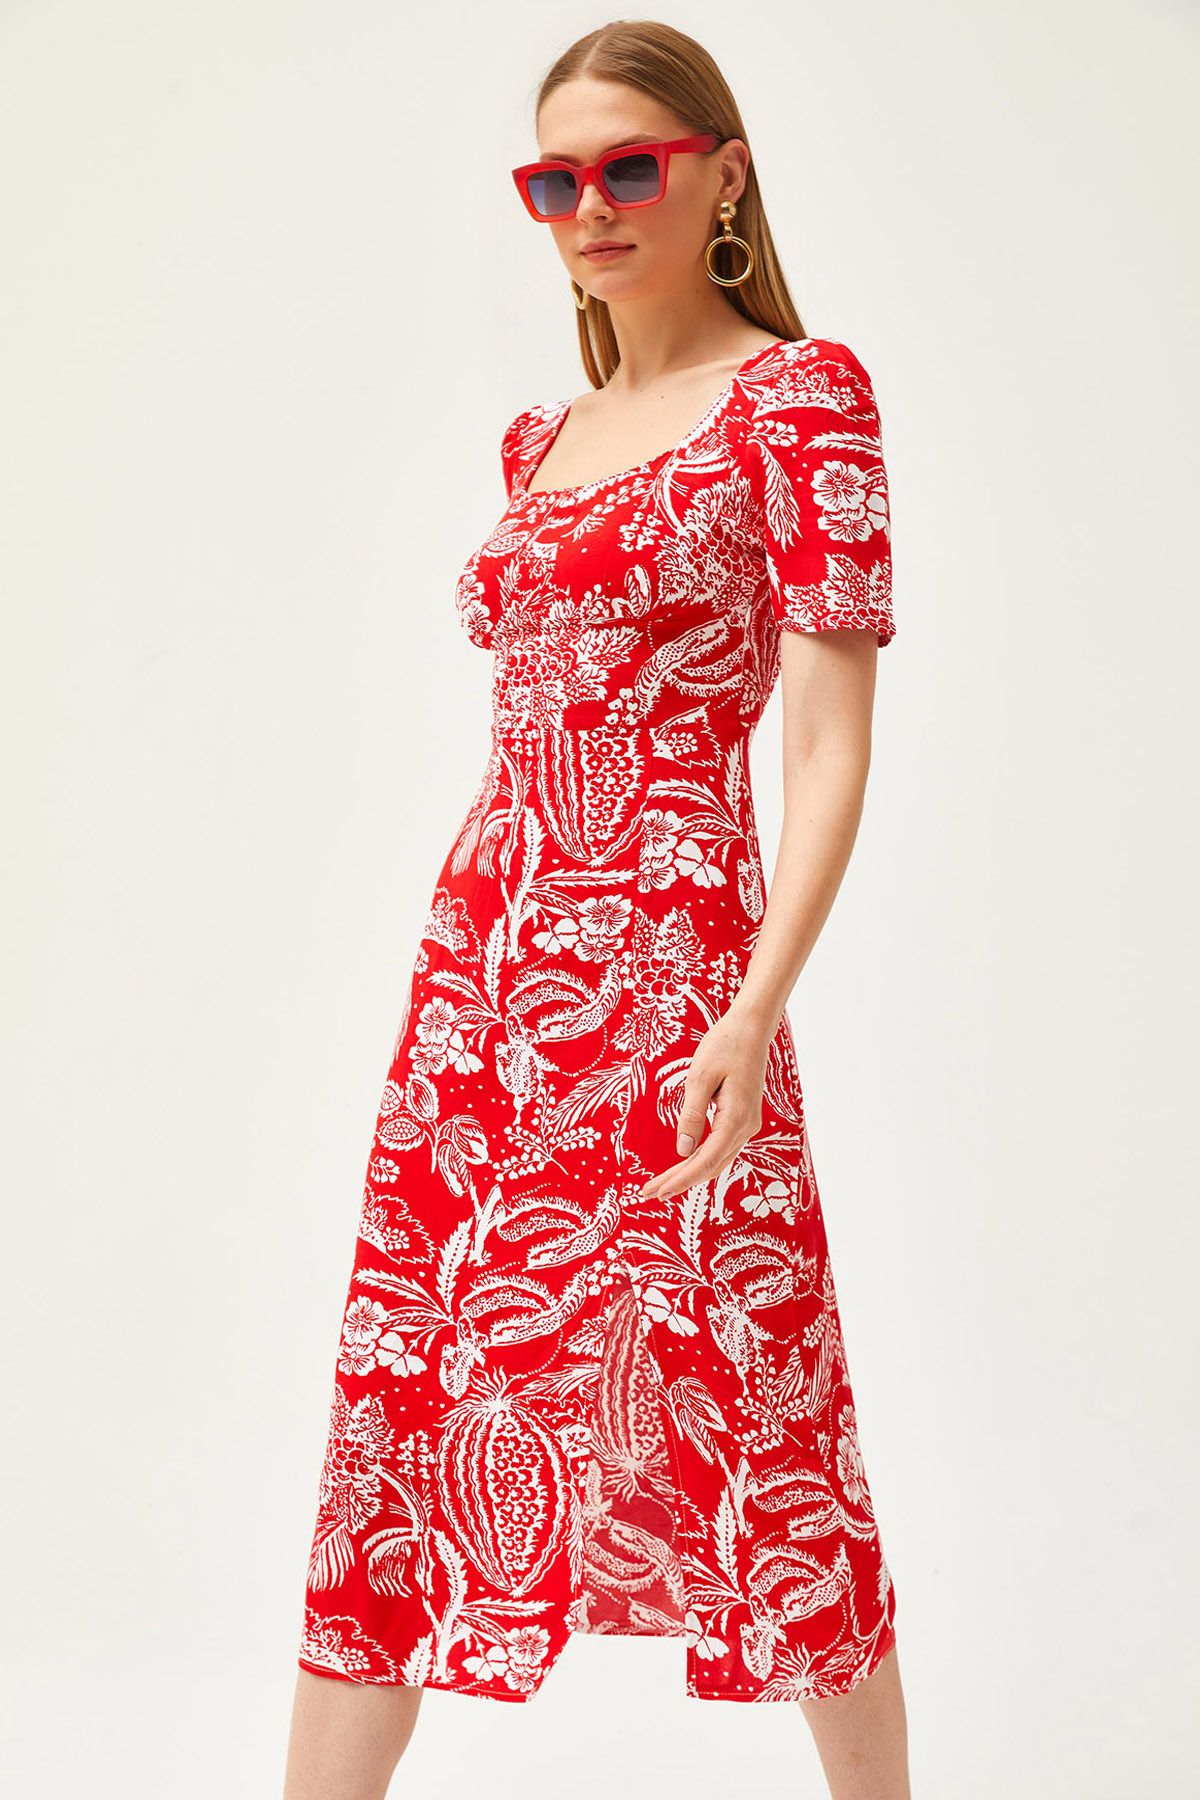 Olalook Kadın Kırmızı Yaprak Kare Yaka Yırtmaçlı Desenli Dokuma Elbise ELB-19002117